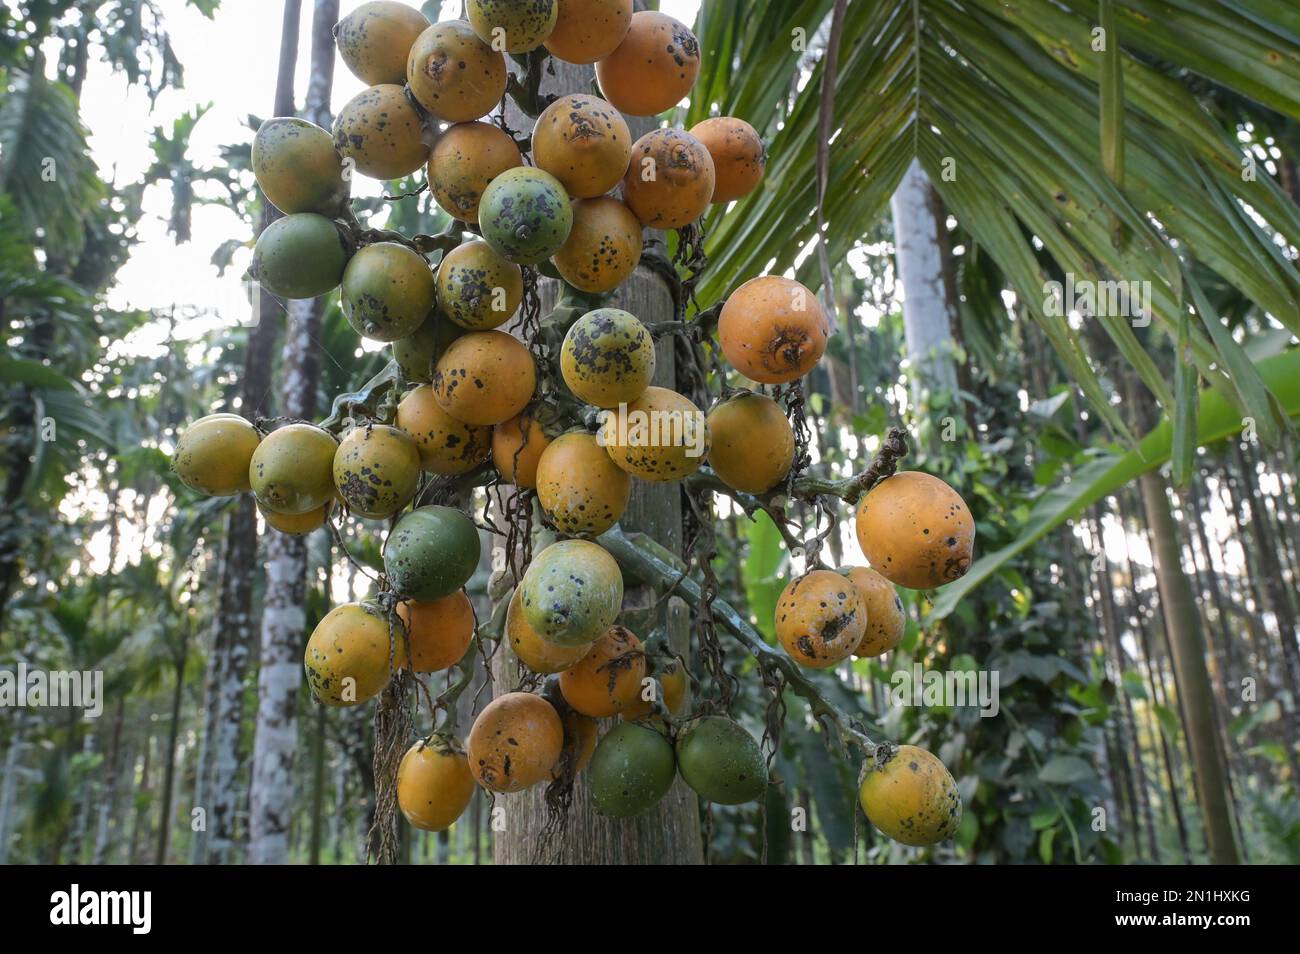 INDE, Karnataka, Mudbidri, noix de bétel ou plantation de noix d'arec, le bételnut est le fruit du palmier d'arec, il est utilisé comme médicament à mâcher avec le poivre de bétel et d'autres ingrédients, l'arec contient des alcaloïdes, la consommation d'arec a de nombreux effets nocifs sur la santé et est cancérogène pour les humains Banque D'Images